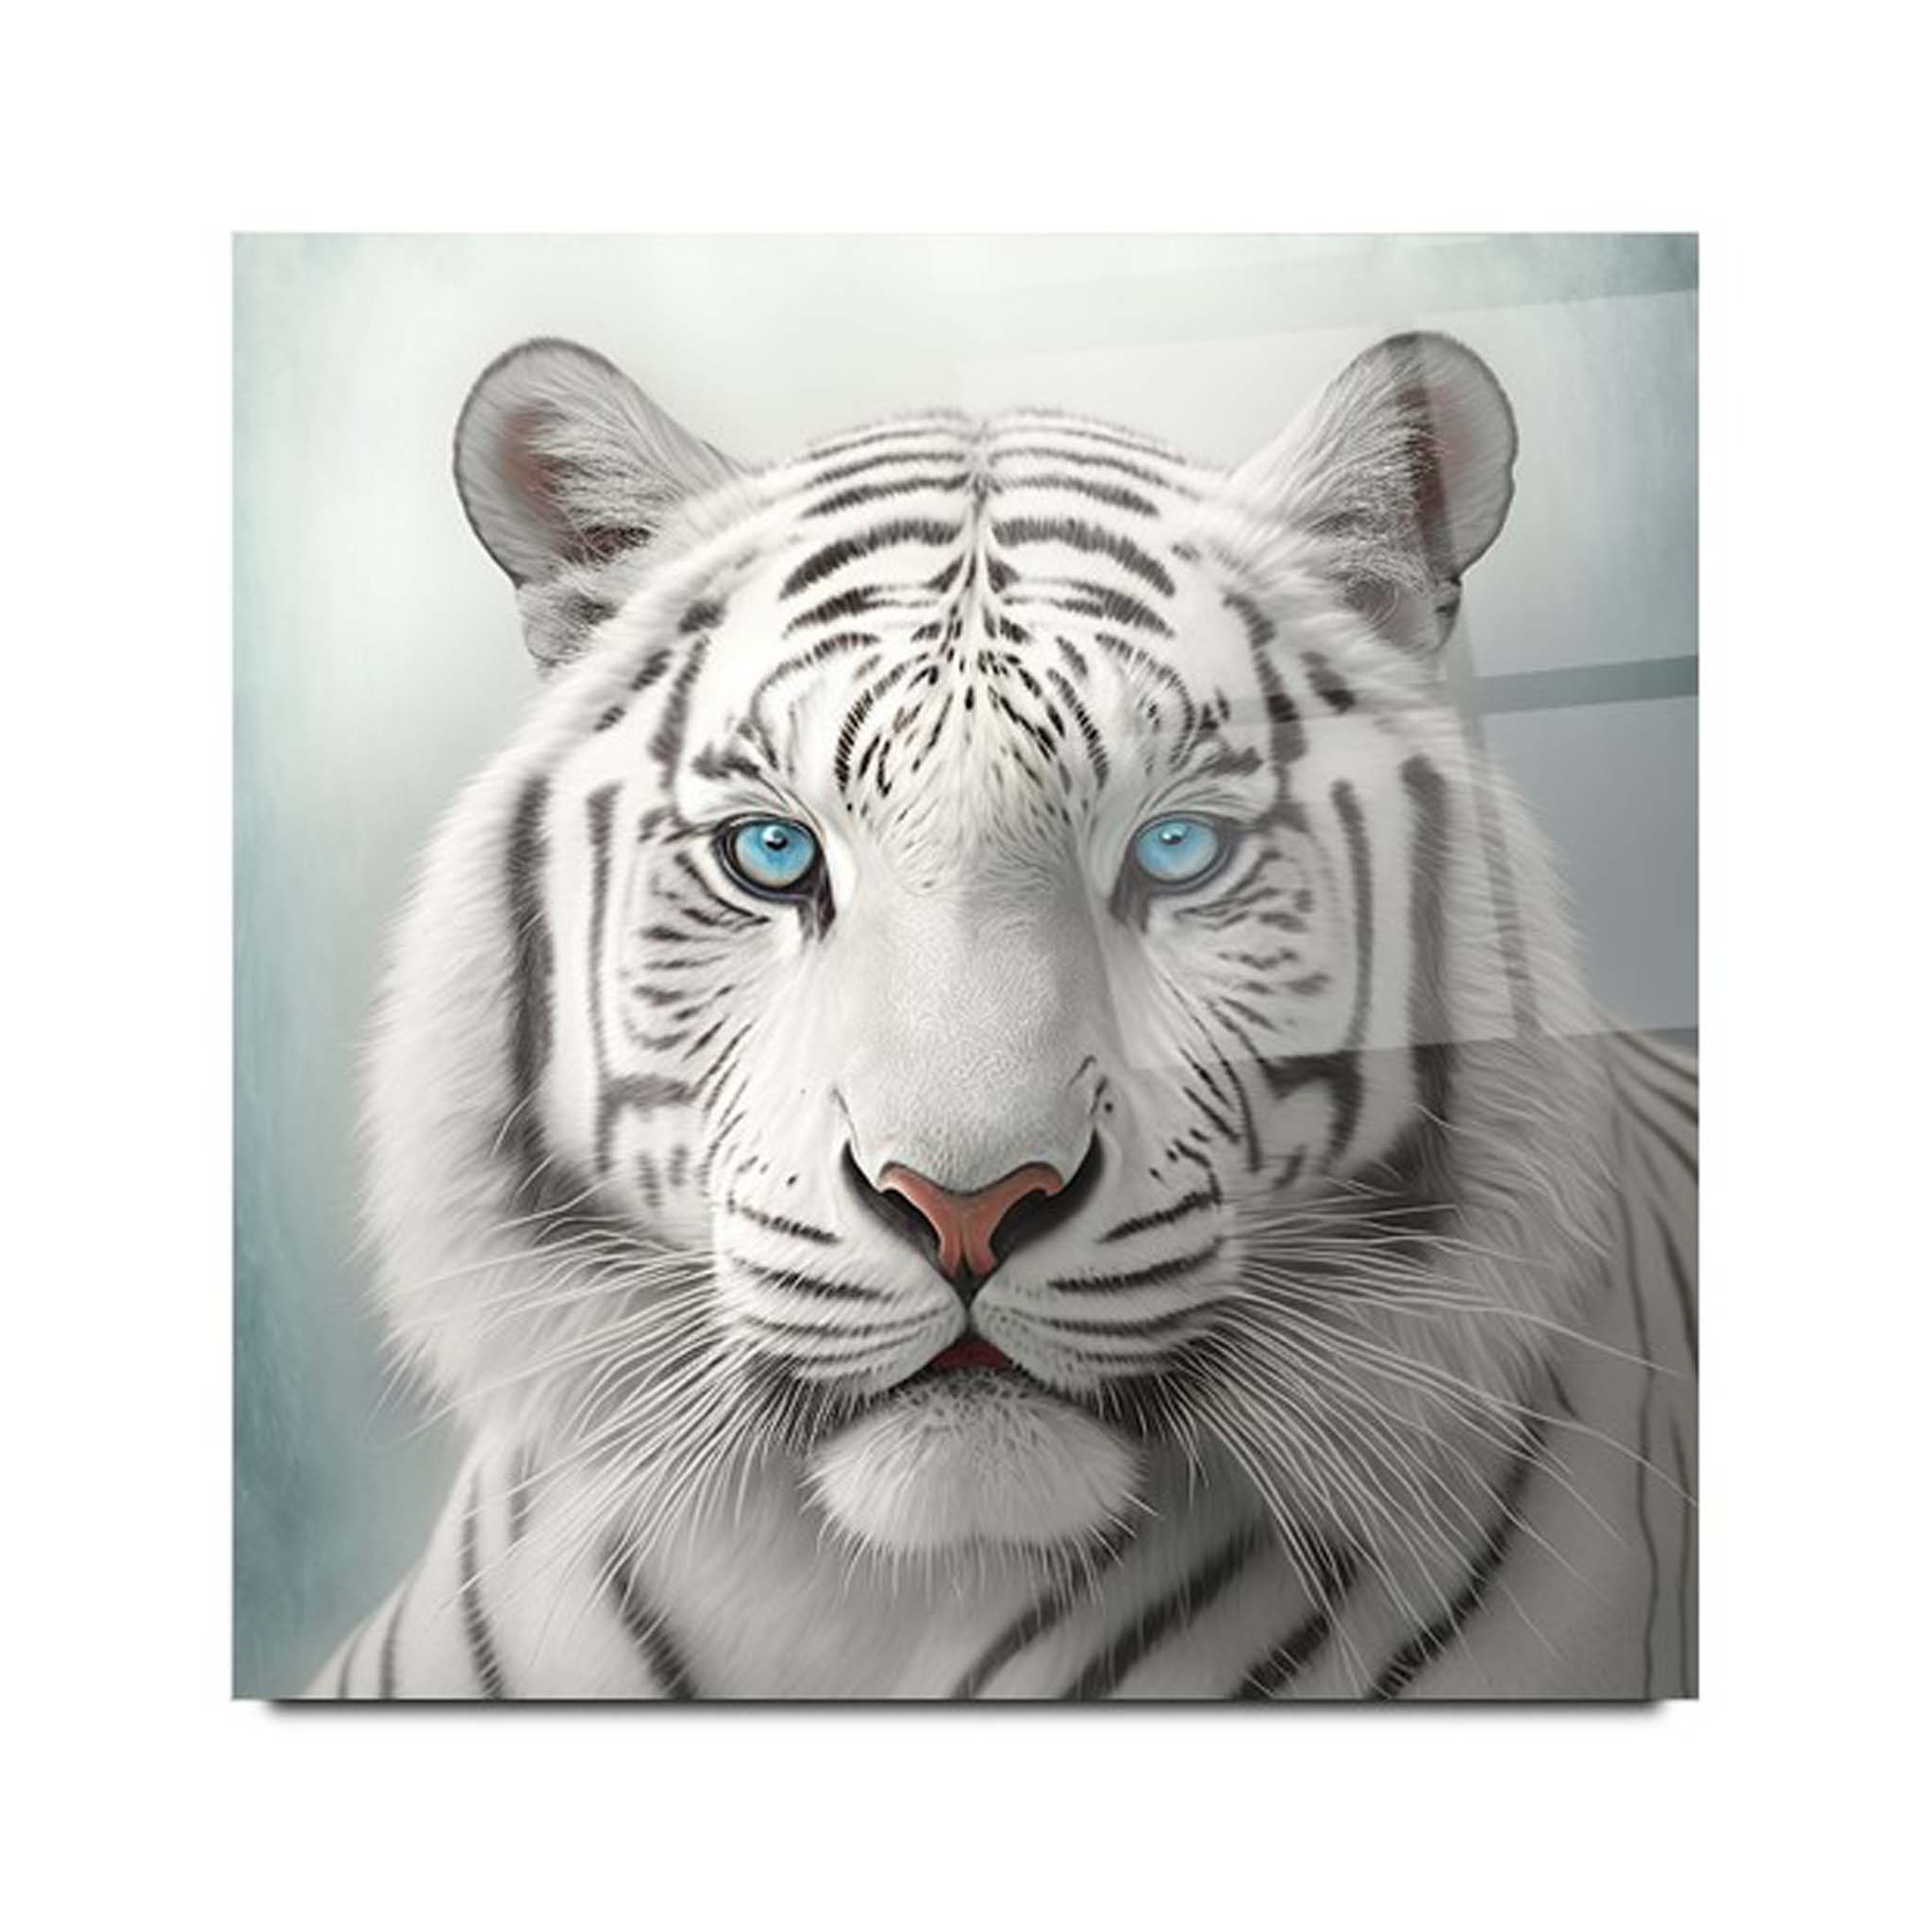 Tiger Glass Wall Art 5